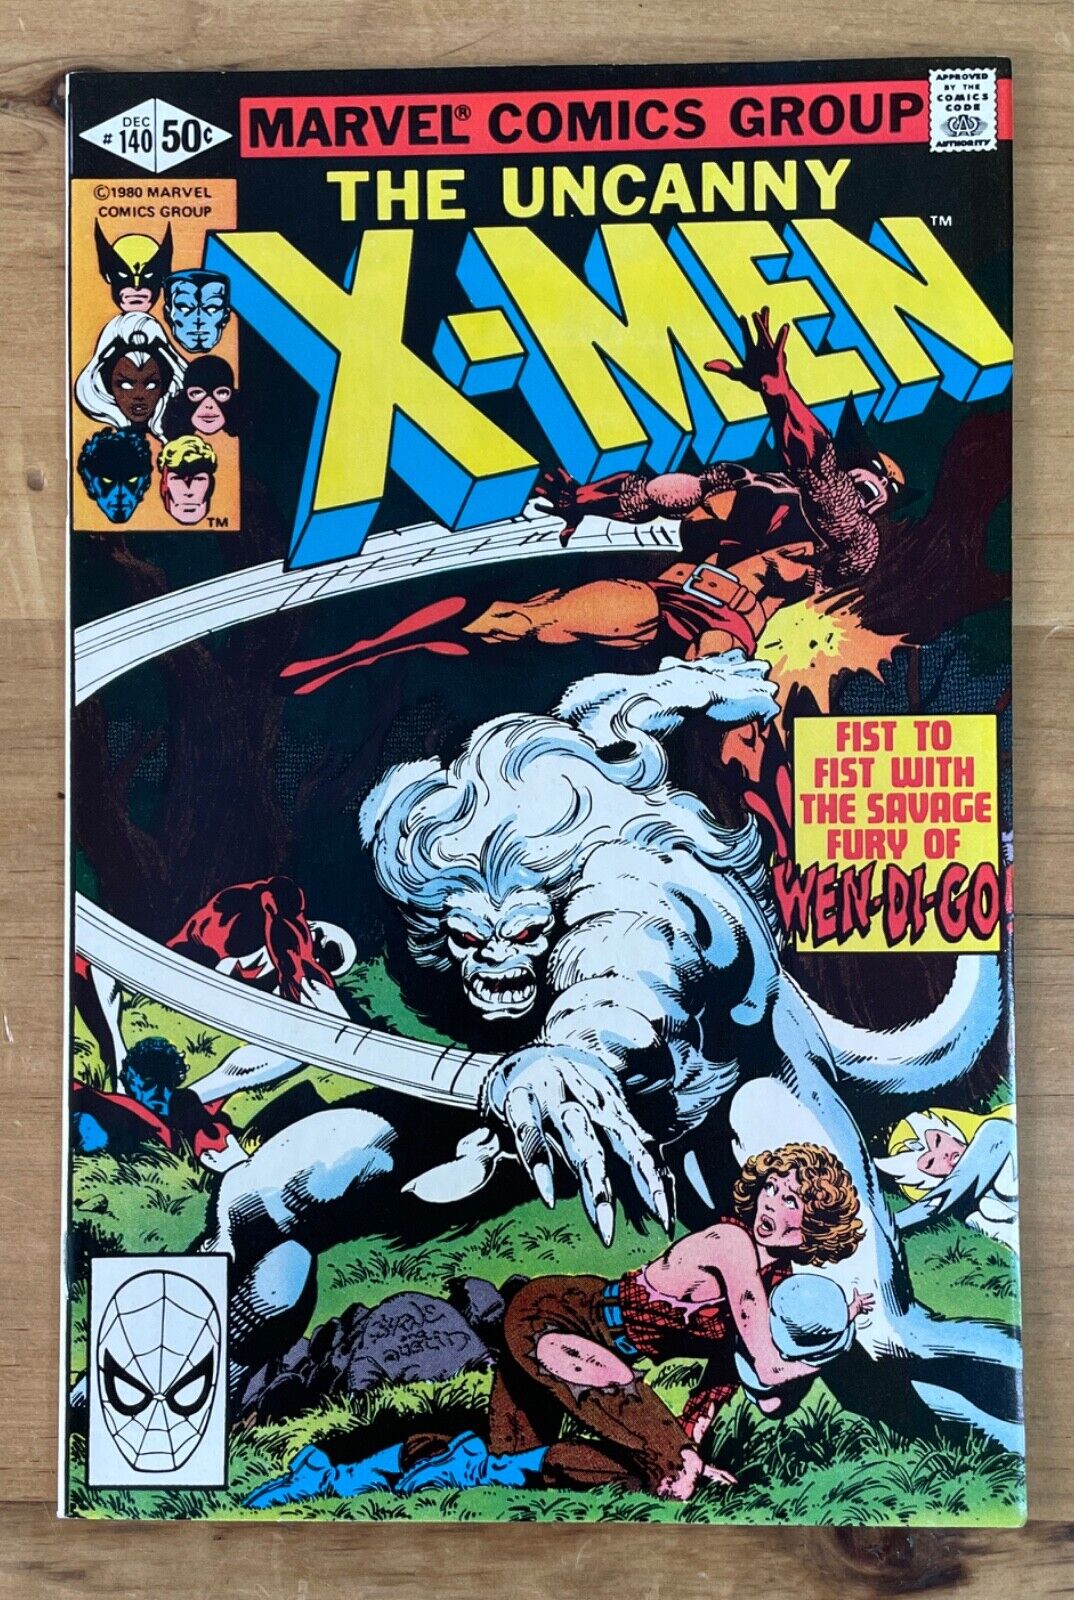 THE UNCANNY X-MEN #140 ~ MARVEL COMICS 1980 ~ VF+